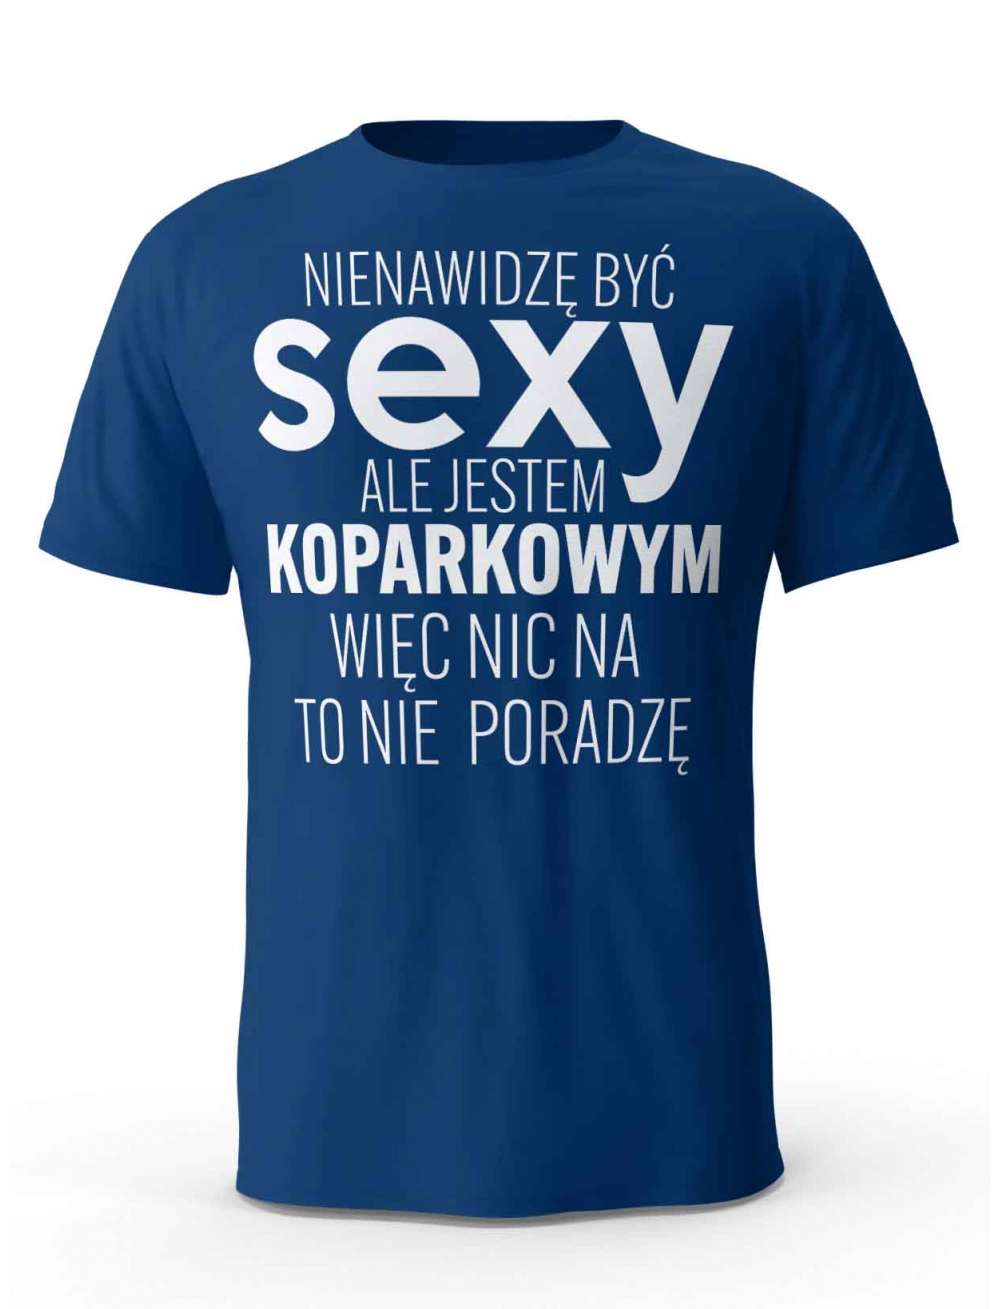 Koszulka Męska, Sexy Koparkowy, Prezent Dla Mężczyzny